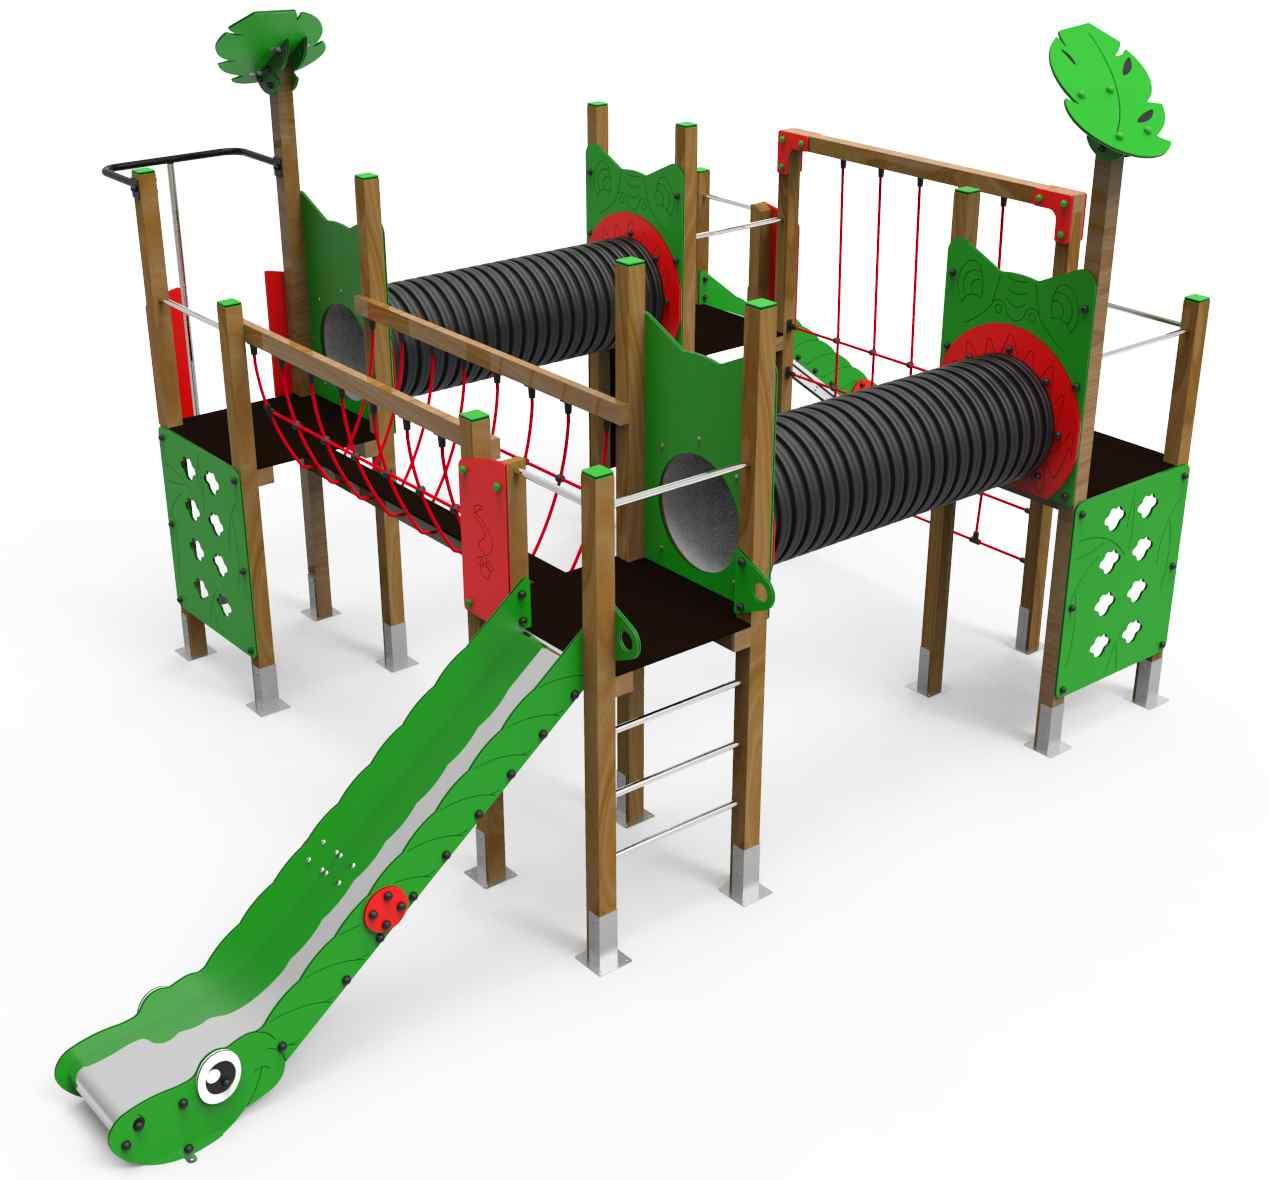 Modelo de jogo de tabuleiro com crianças e parque infantil